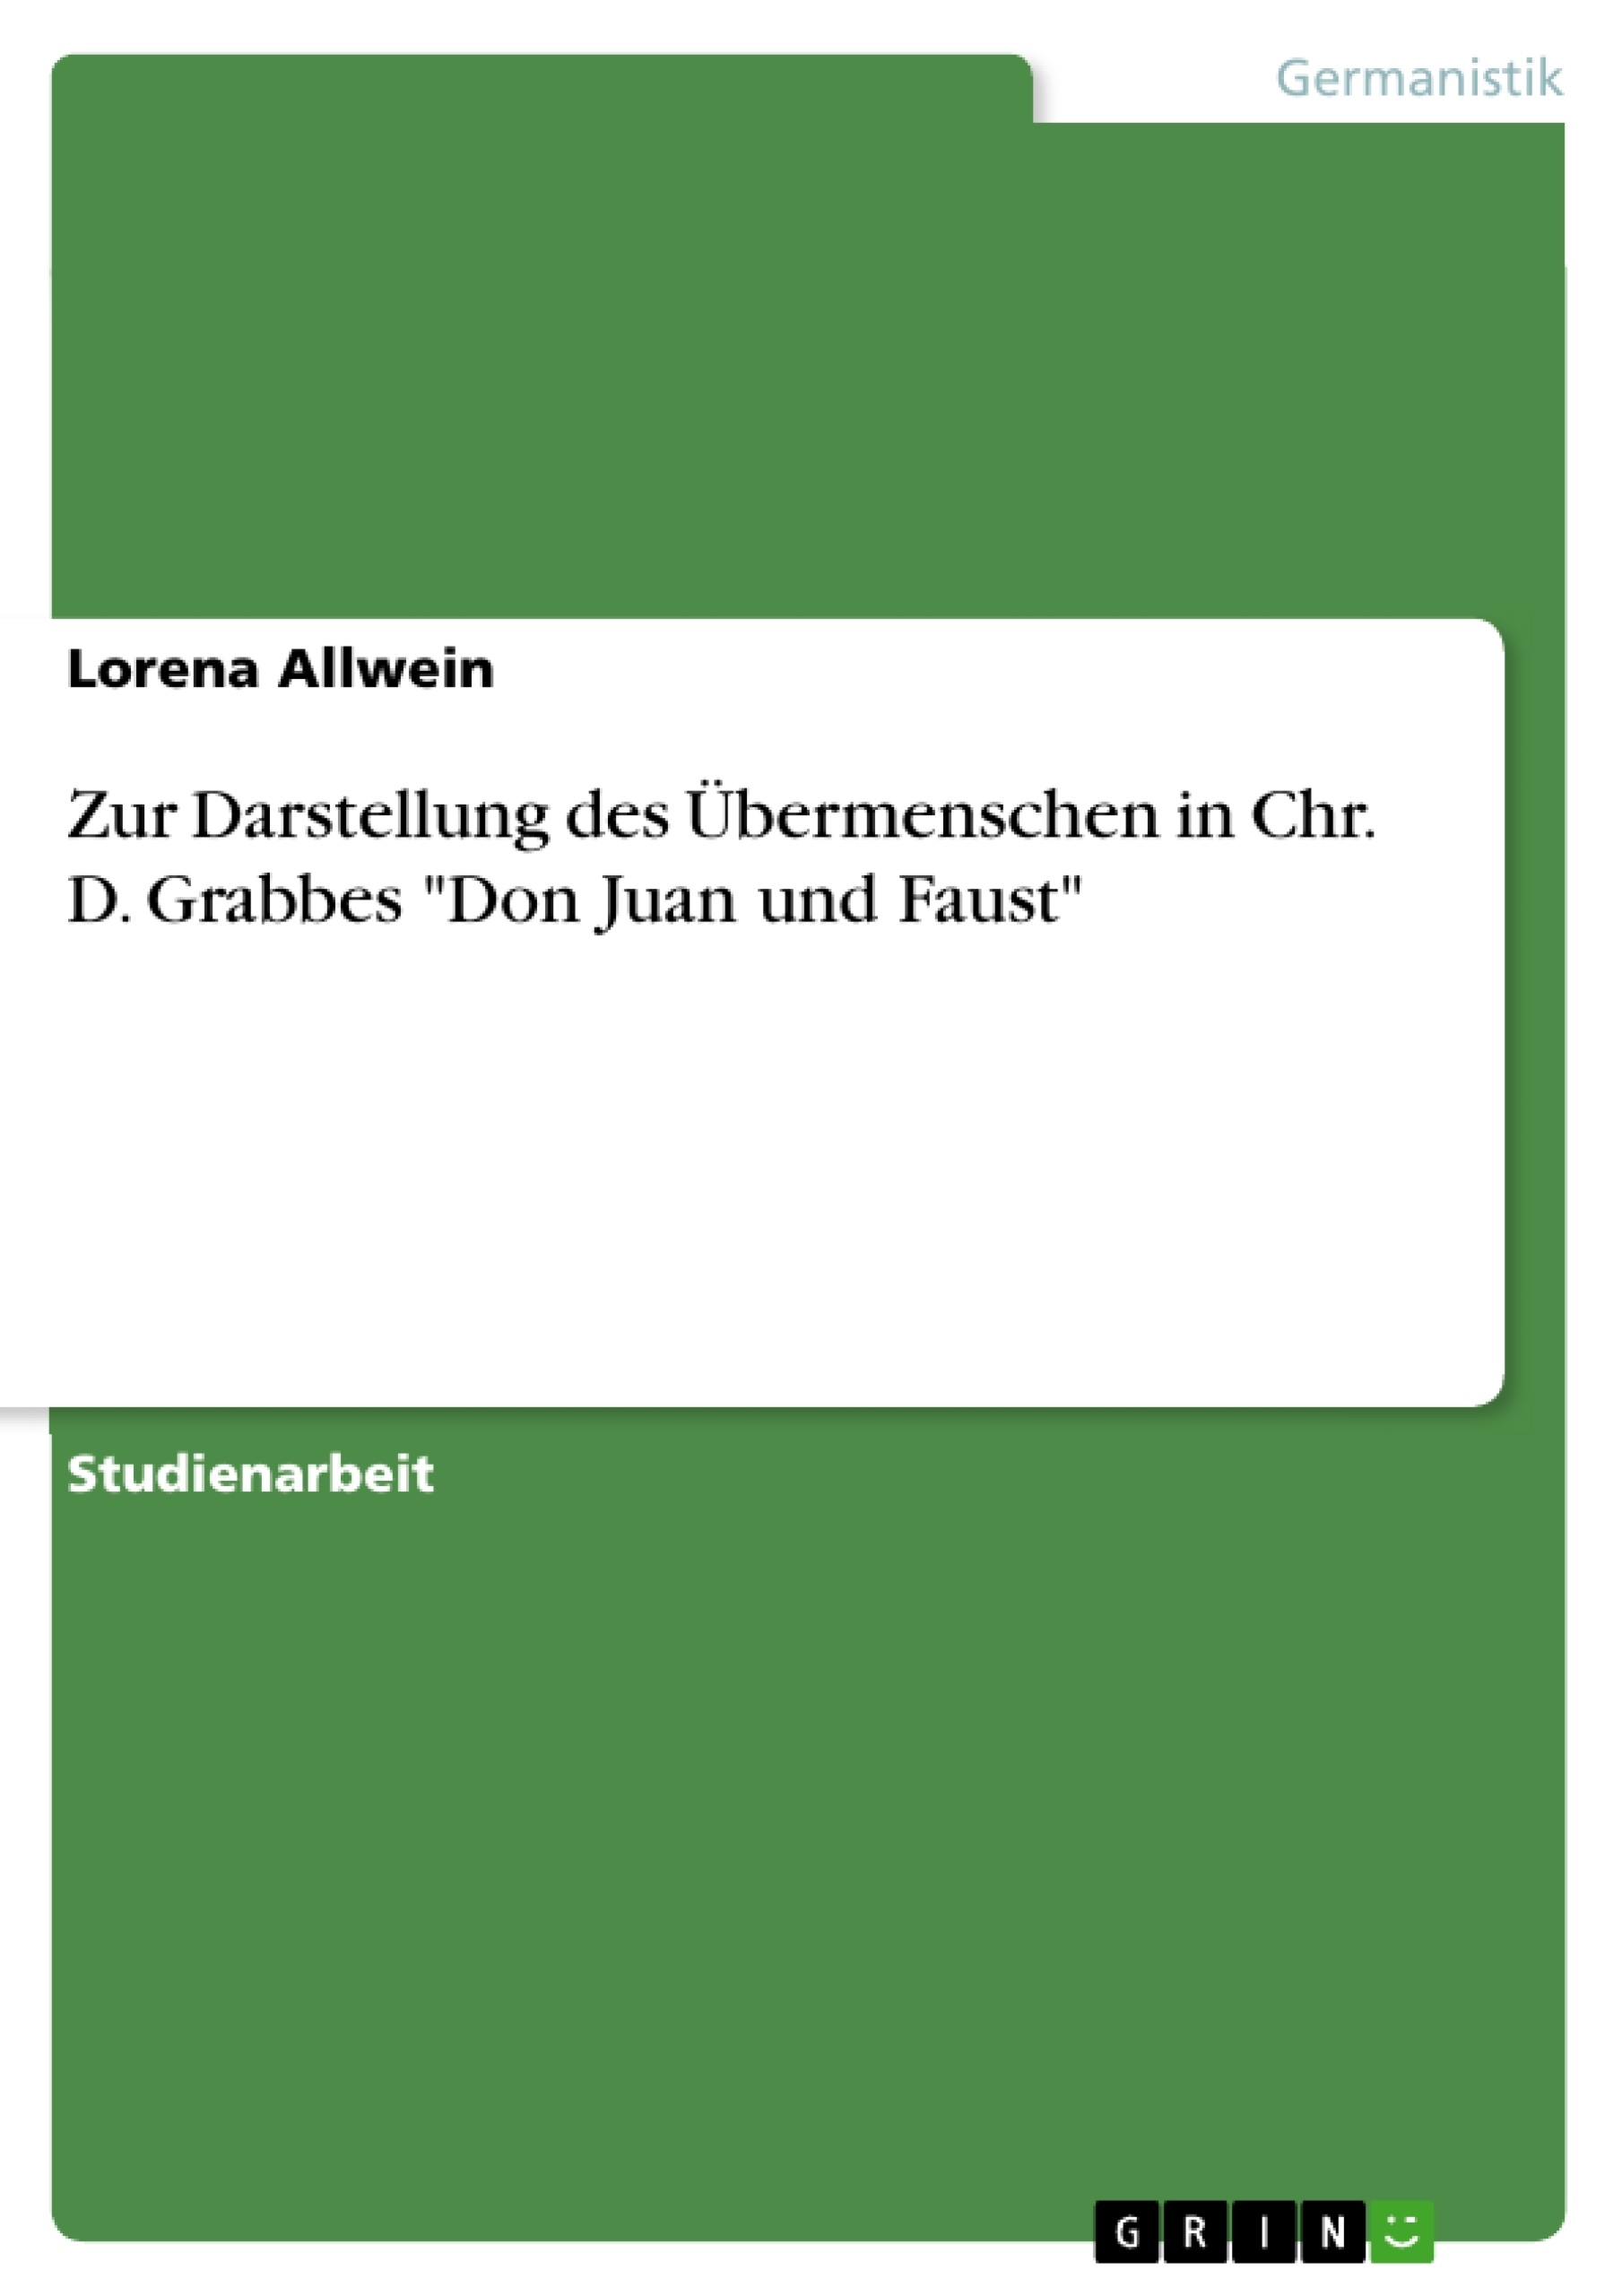 Title: Zur Darstellung des Übermenschen in Chr. D. Grabbes "Don Juan und Faust"